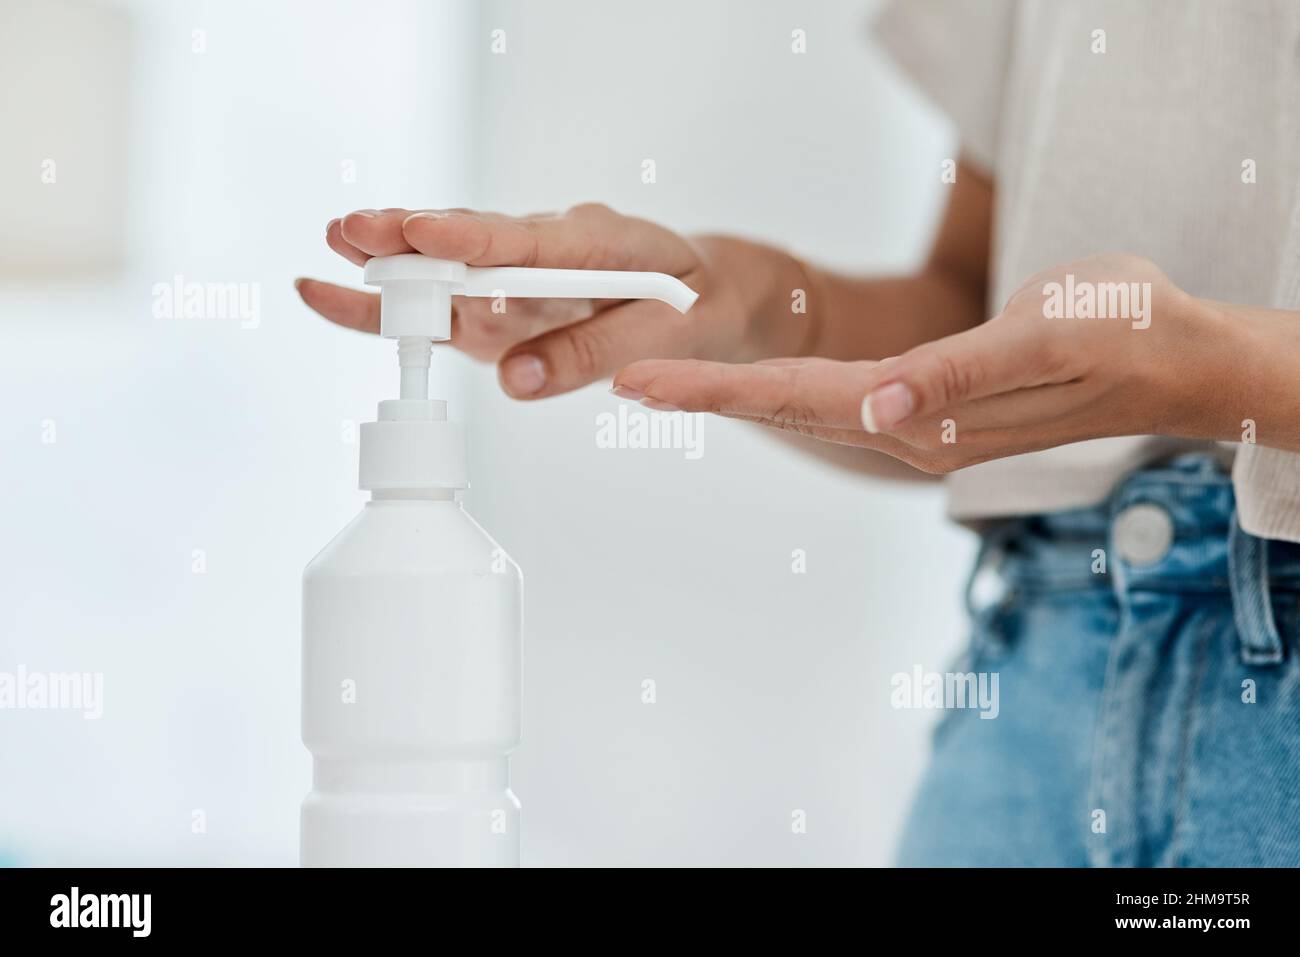 L'assainisseur pour les mains tue de nombreux germes nocifs. Photo d'une femme non reconnaissable qui désinfecte ses mains. Banque D'Images